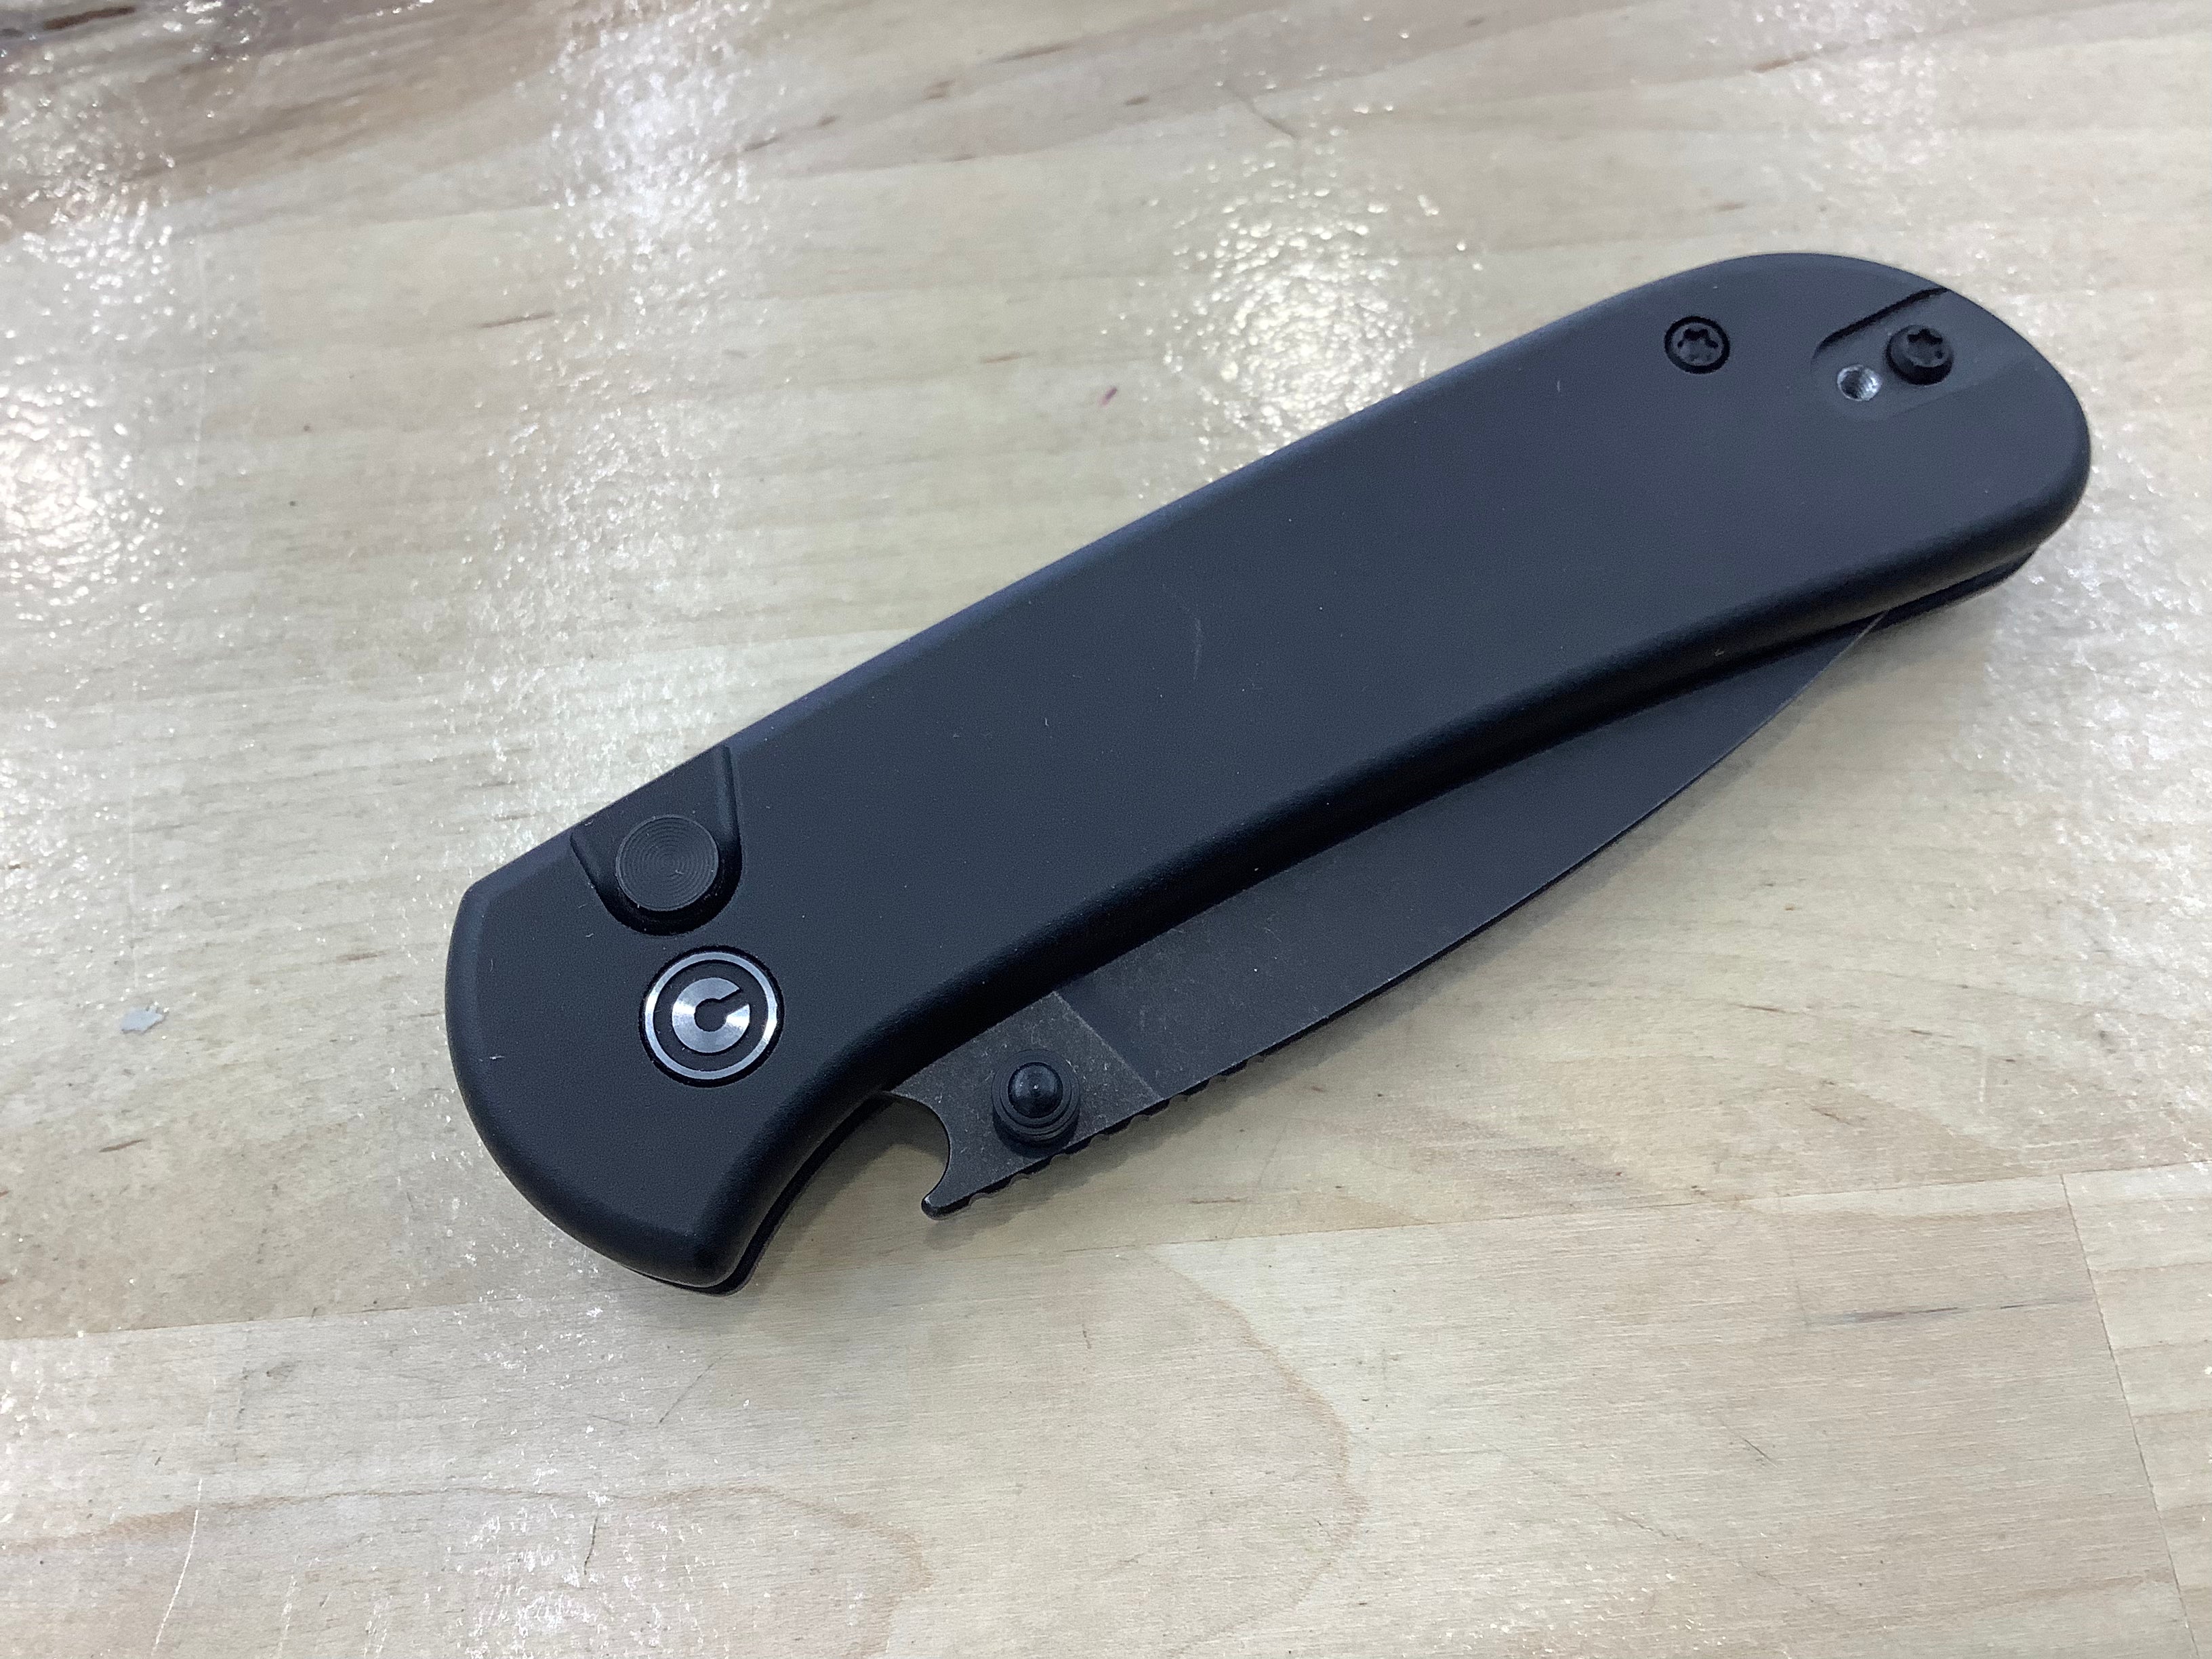 CIVIVI Qubit Button Lock & Thumb Stud Knife Black Aluminum Handle (2.98" 14C28N Blade) C22030E-1